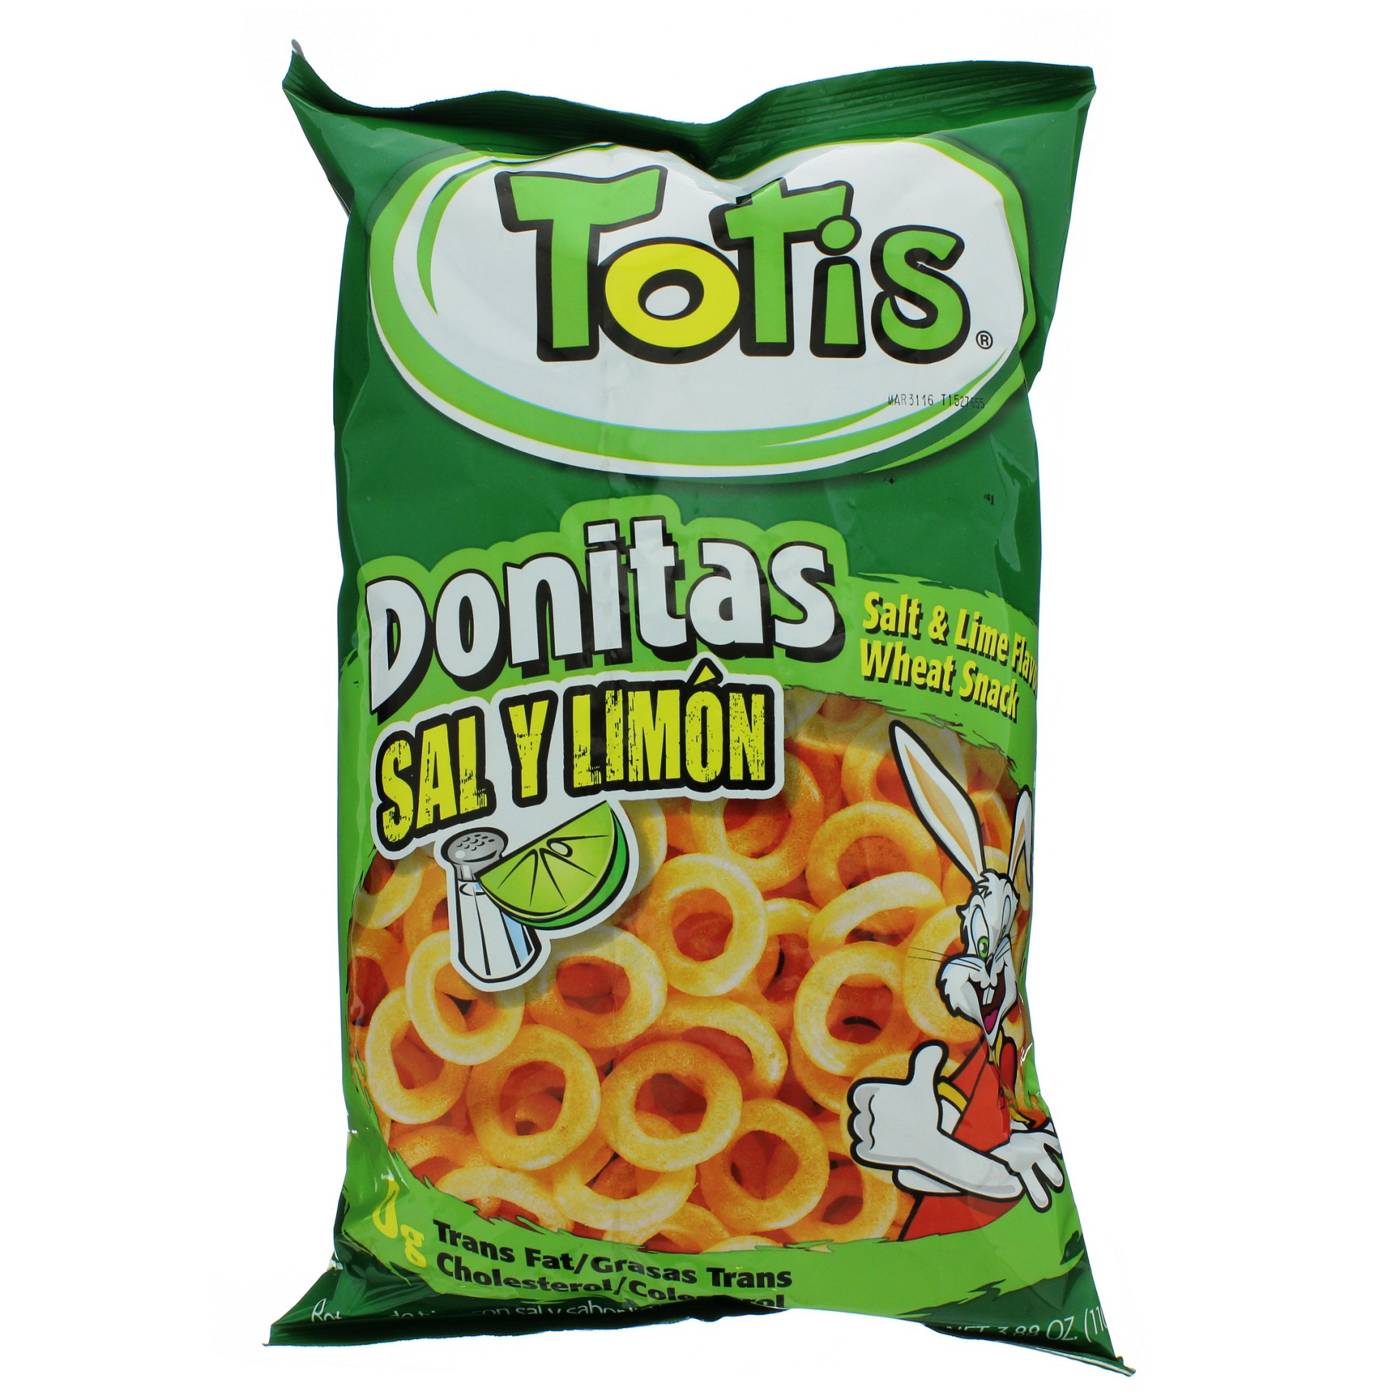 Totis Sal Y Limon Donitas; image 1 of 2